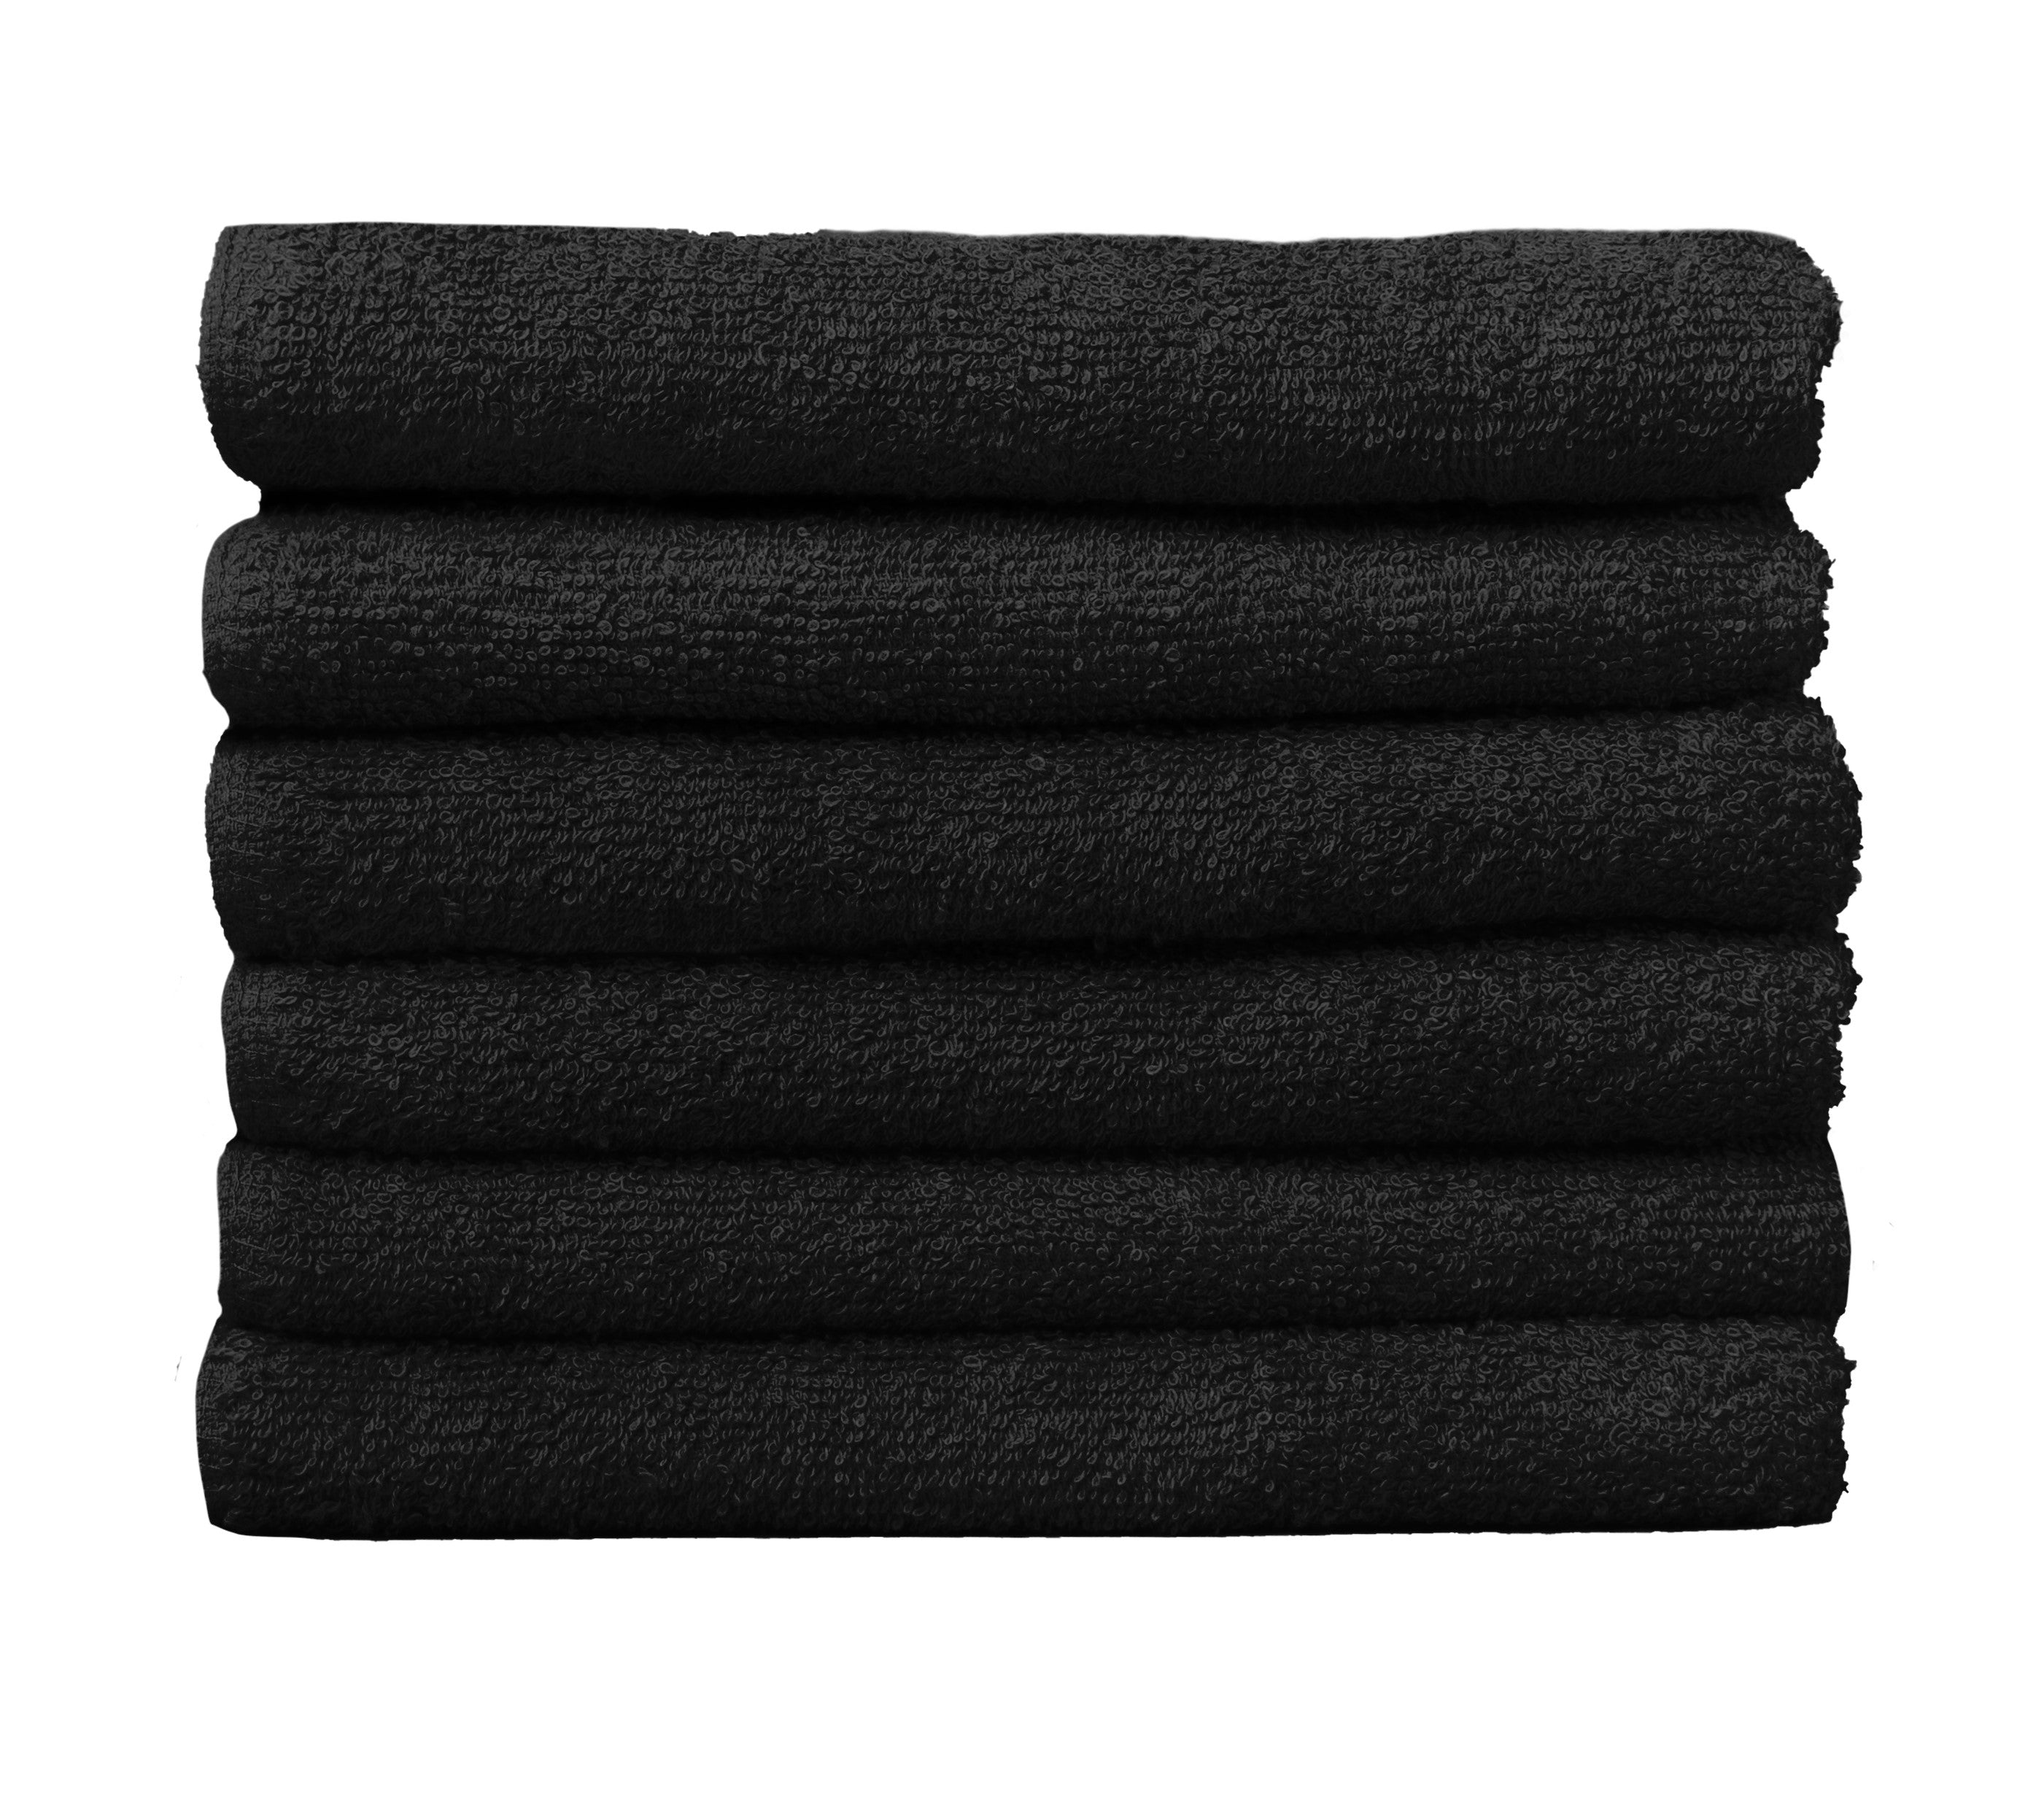 Black Protex Bleach Guard Onyx Towels - 16 x 29